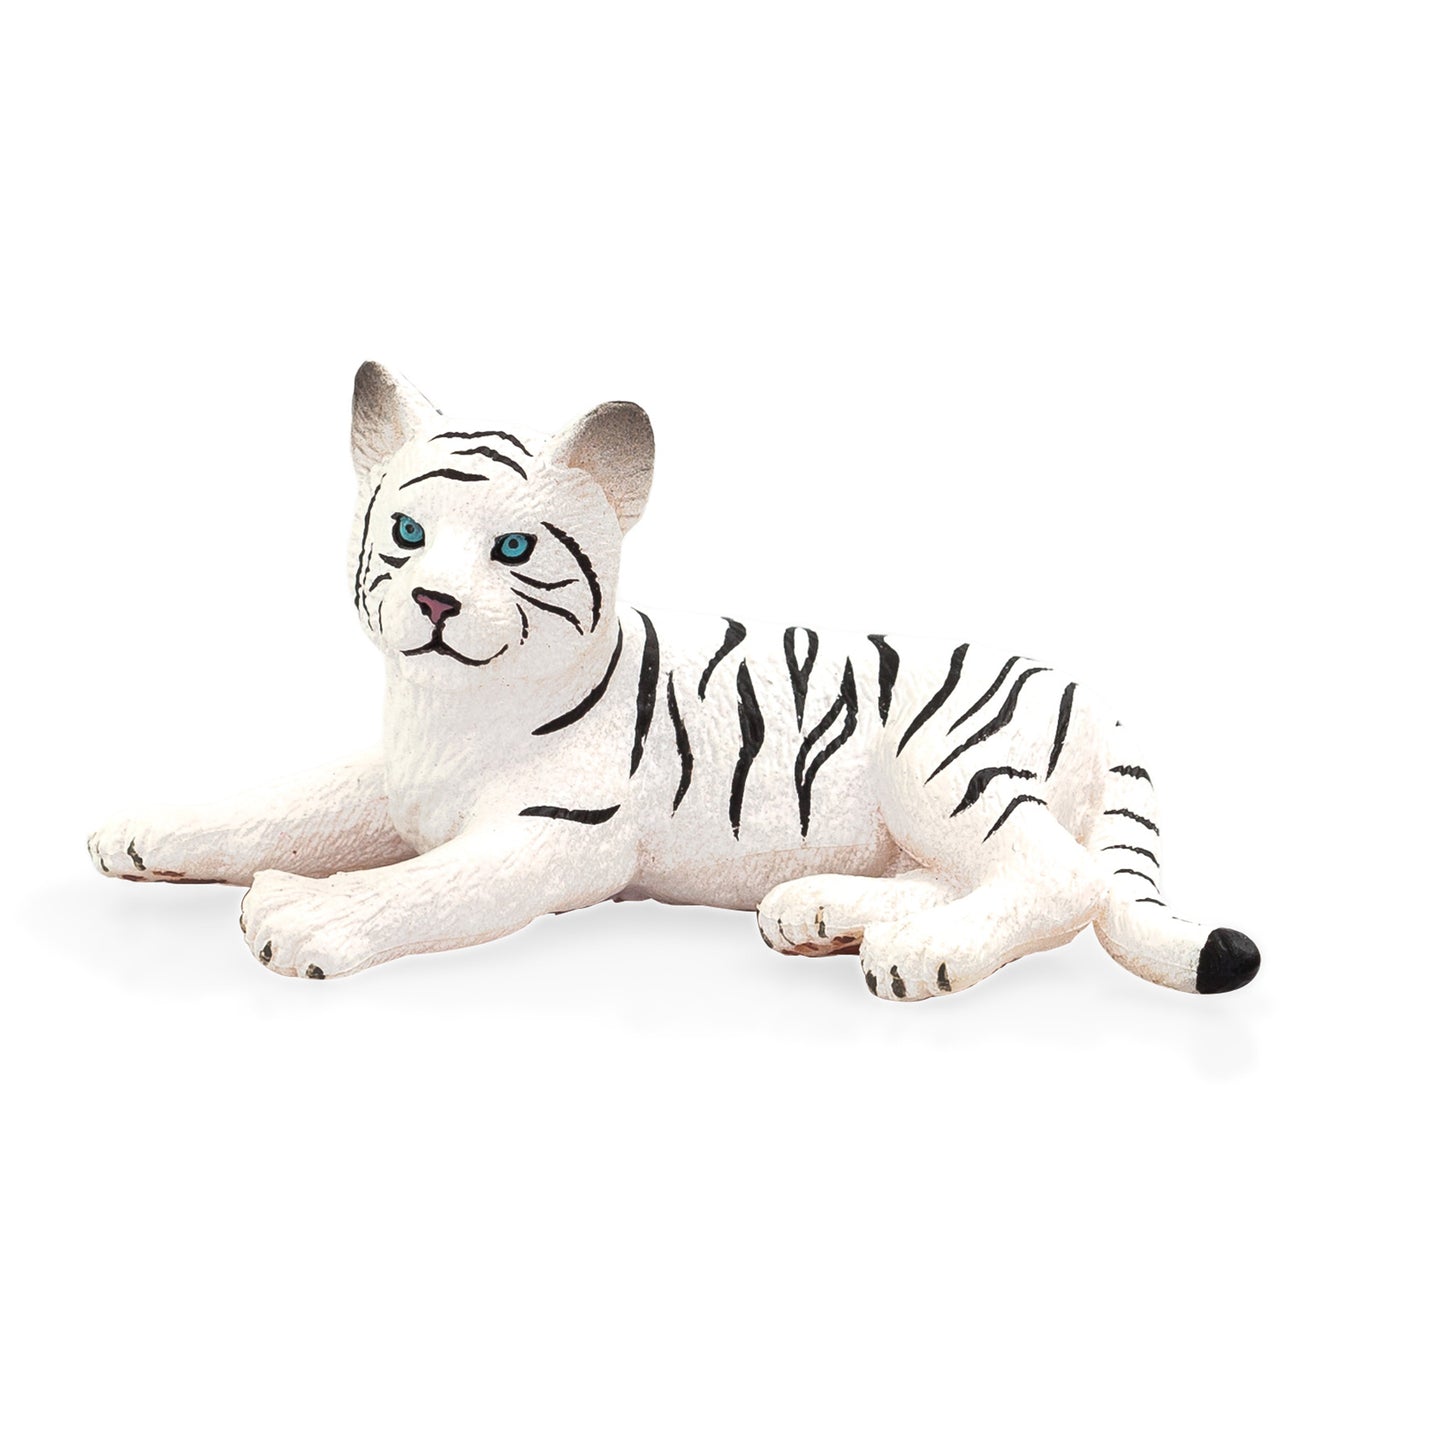 White Tiger cub lying down